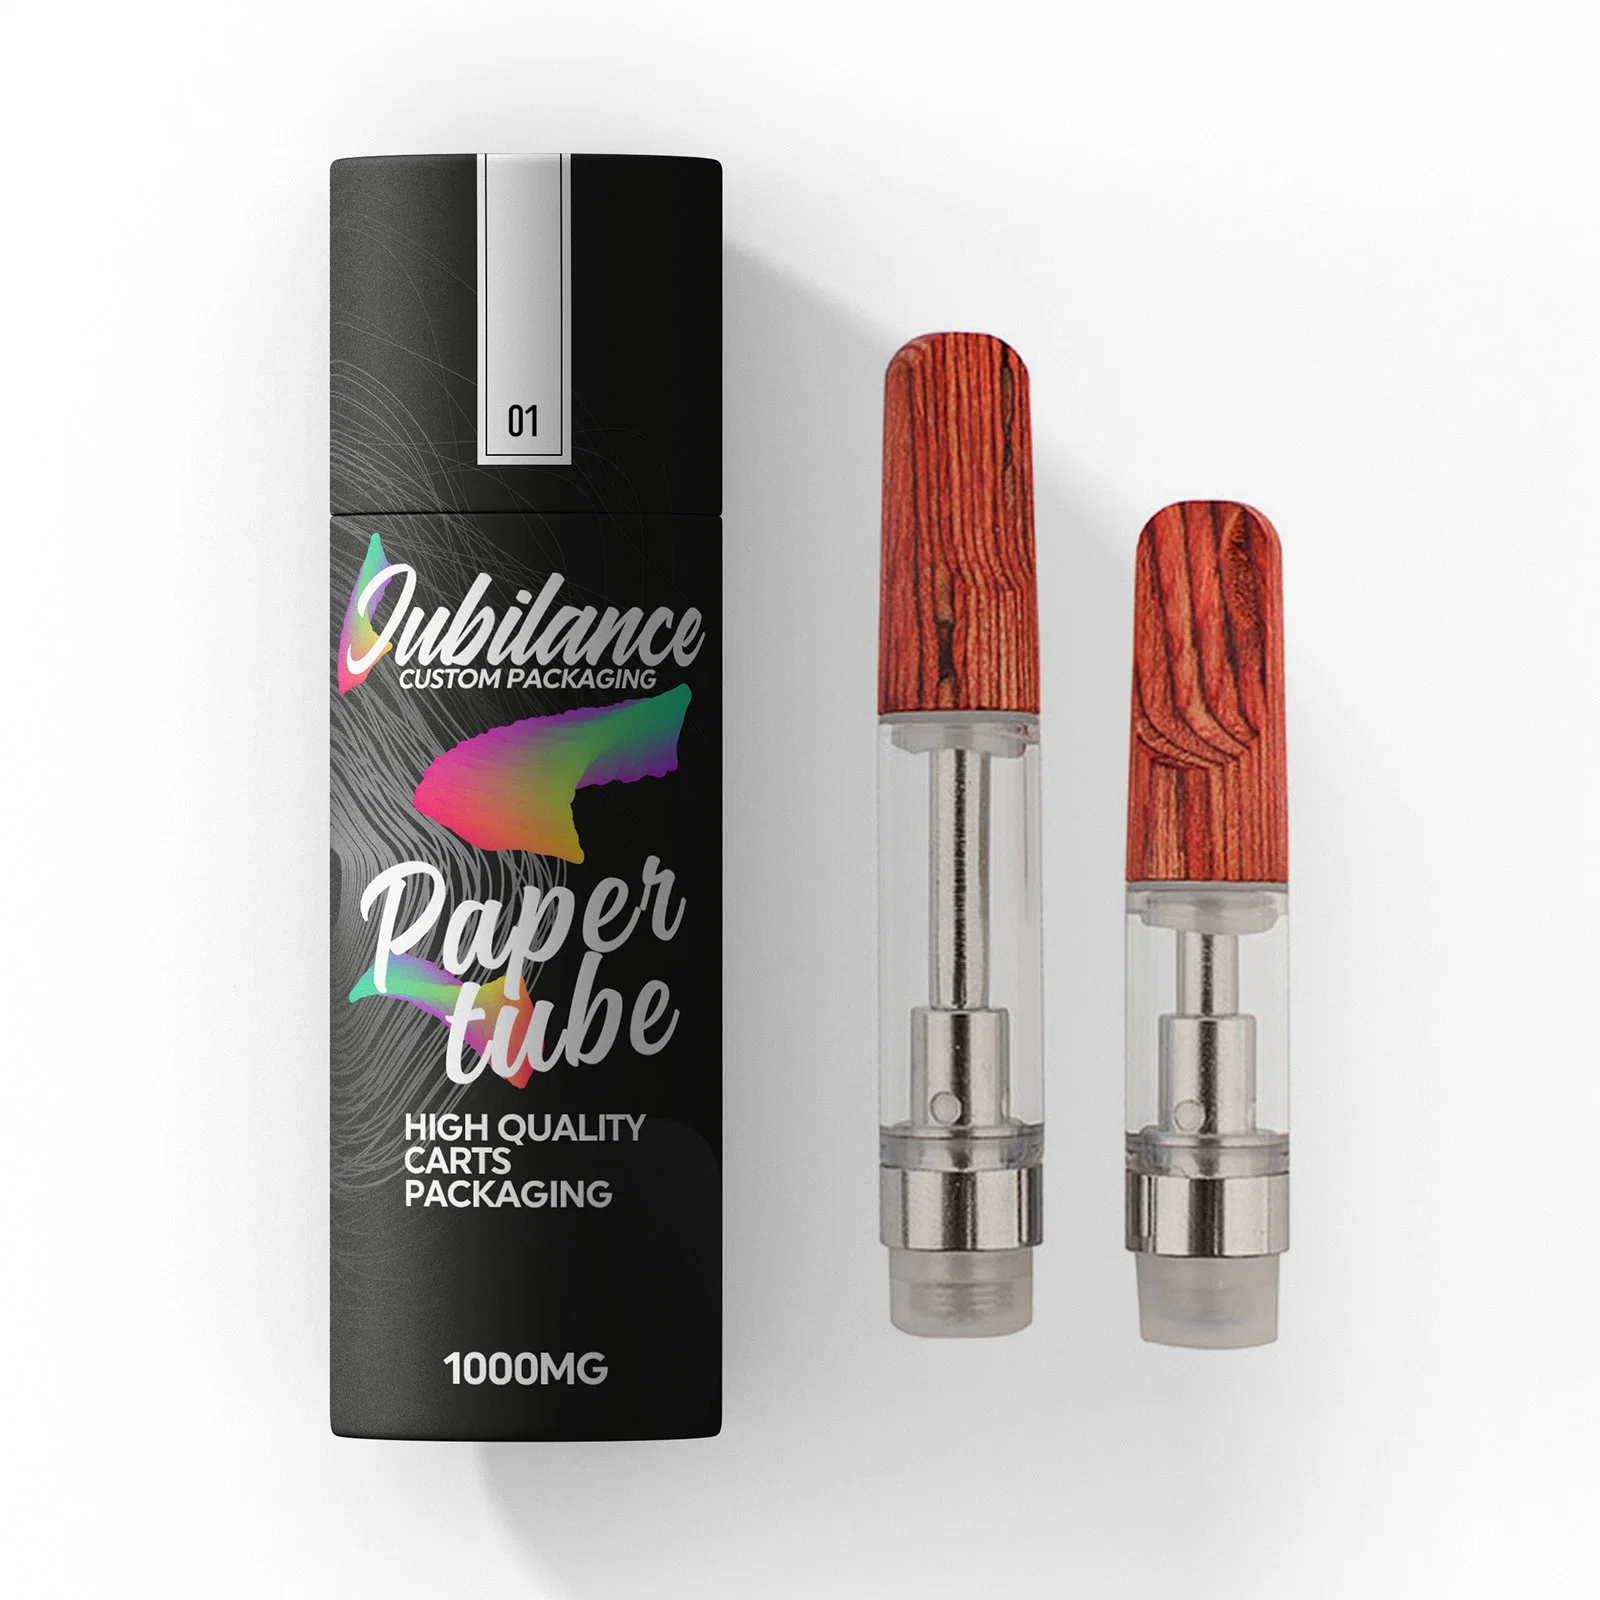 Jubilance Hhc Full Glass Cartridge 510 Disposable/Chargeable E Cigarettes Vape Pens 5ml Vaporizer Pen